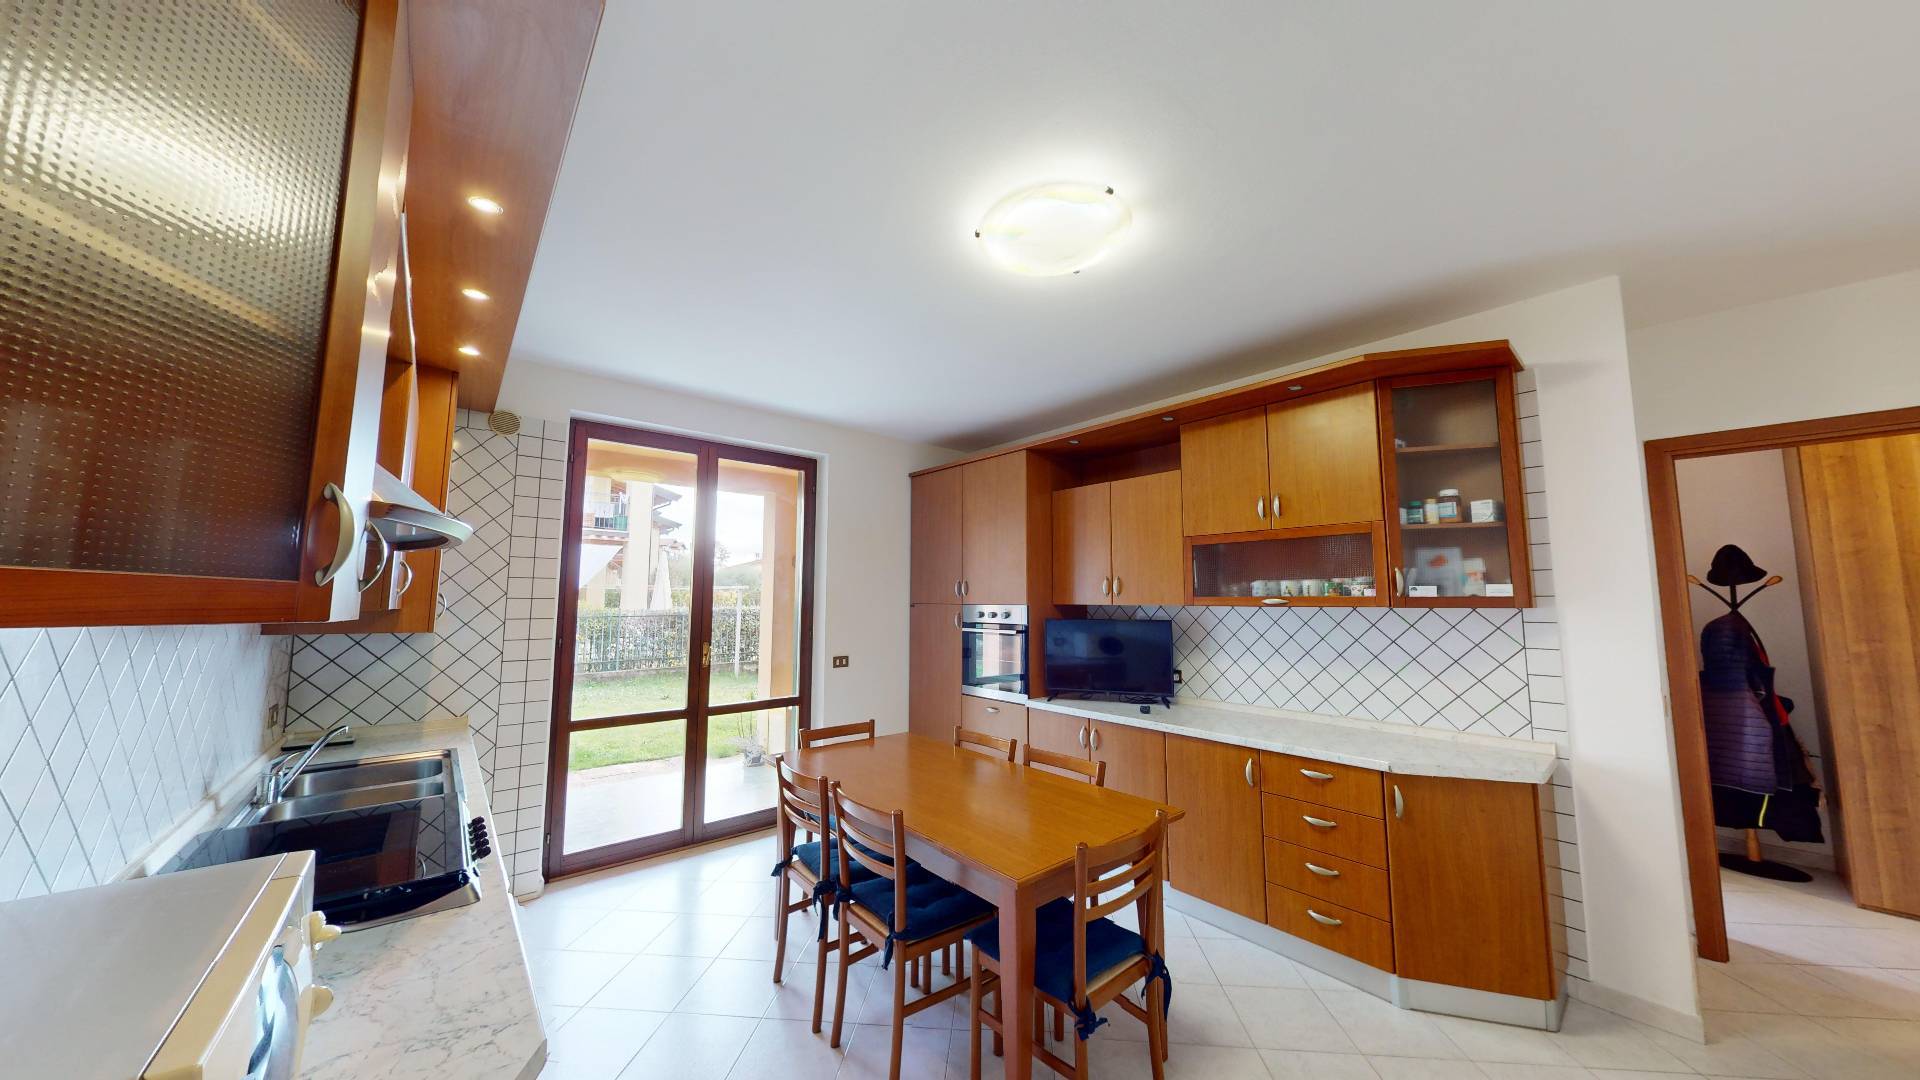 Appartamento in vendita a Puegnago sul Garda, 3 locali, prezzo € 209.000 | PortaleAgenzieImmobiliari.it